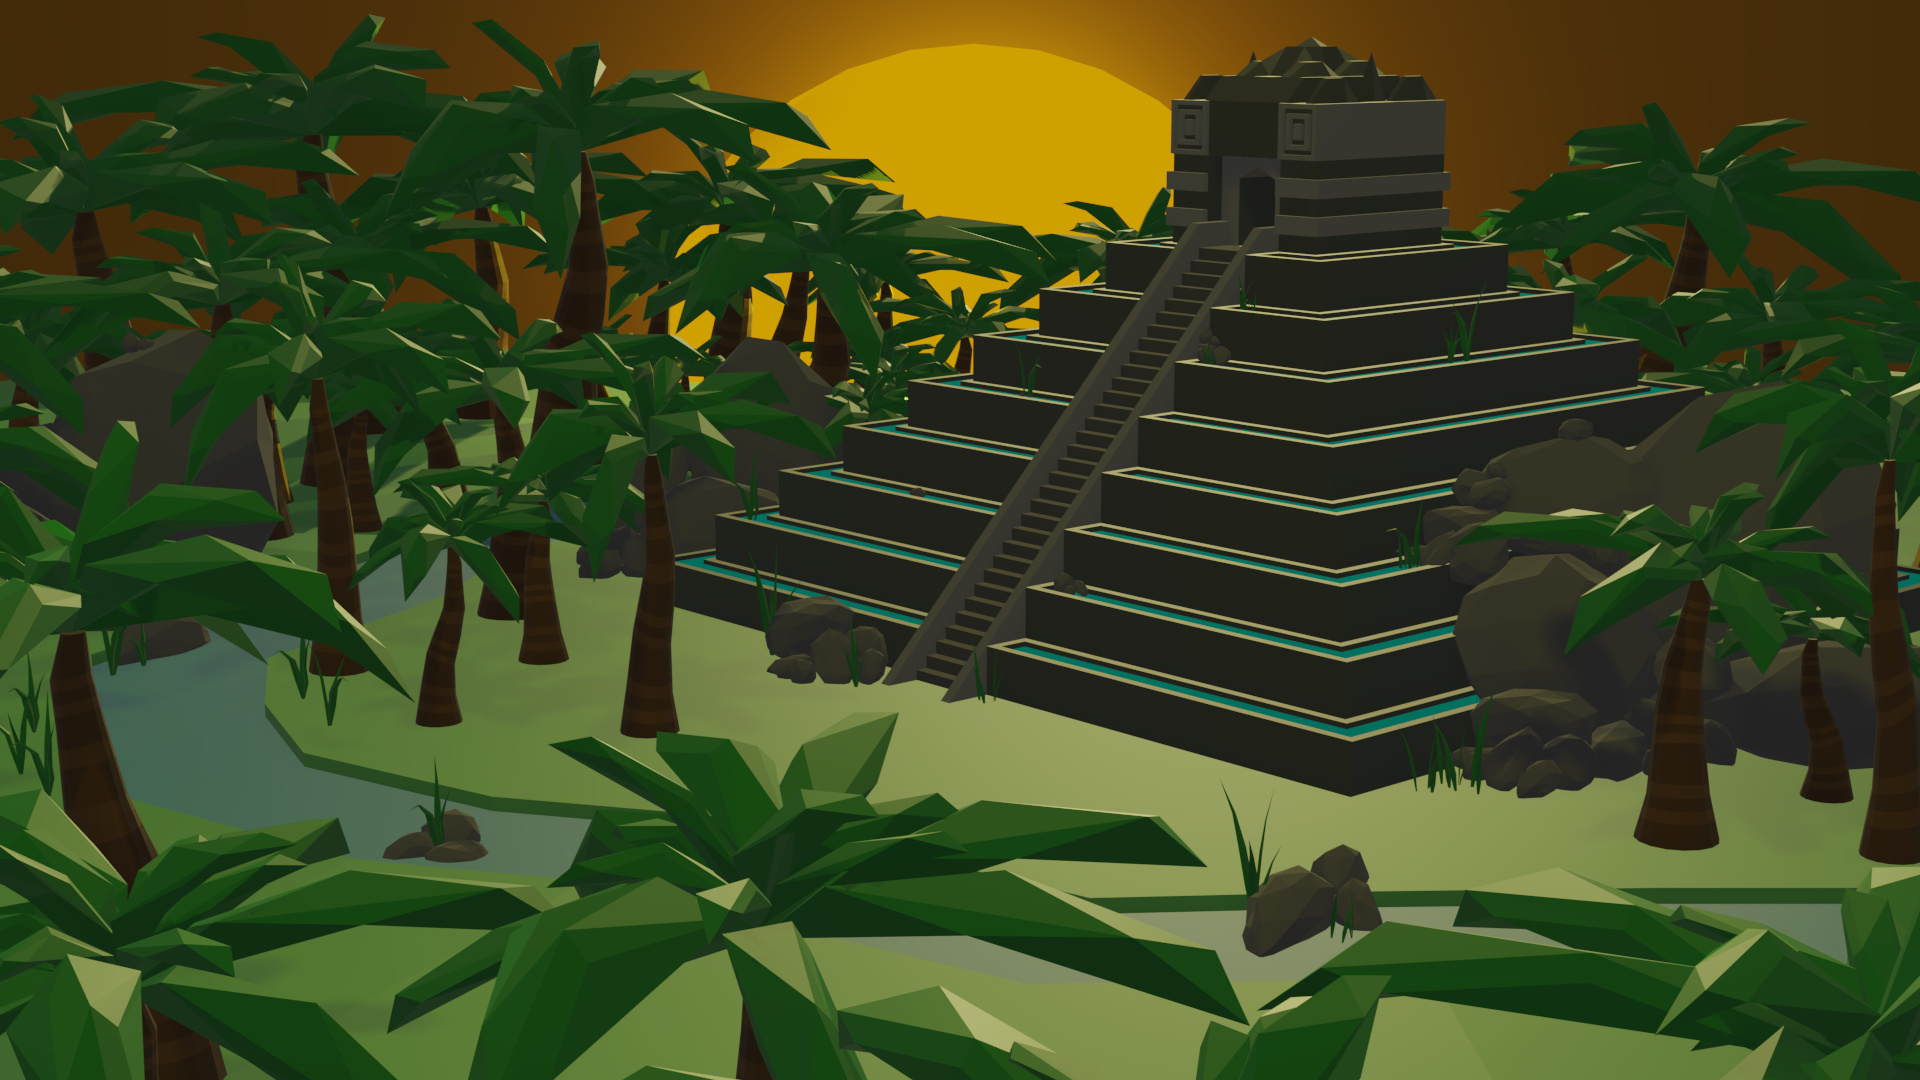 MayanPyramidEevee